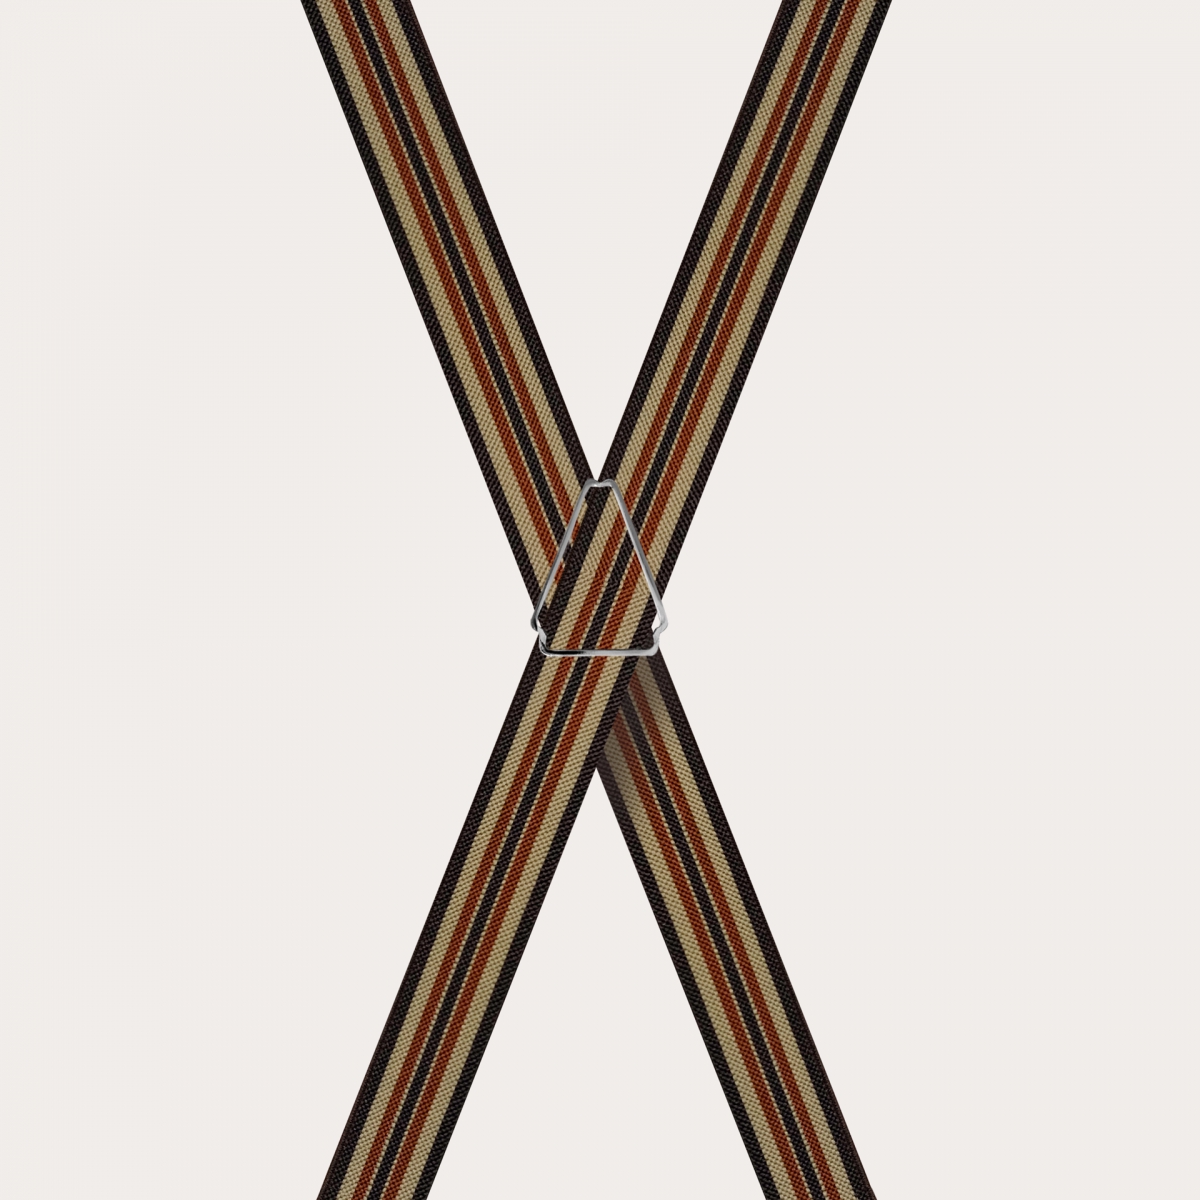 BRUCLE Tirantes finos en forma de X para niños y adolescentes, marrón y caqui